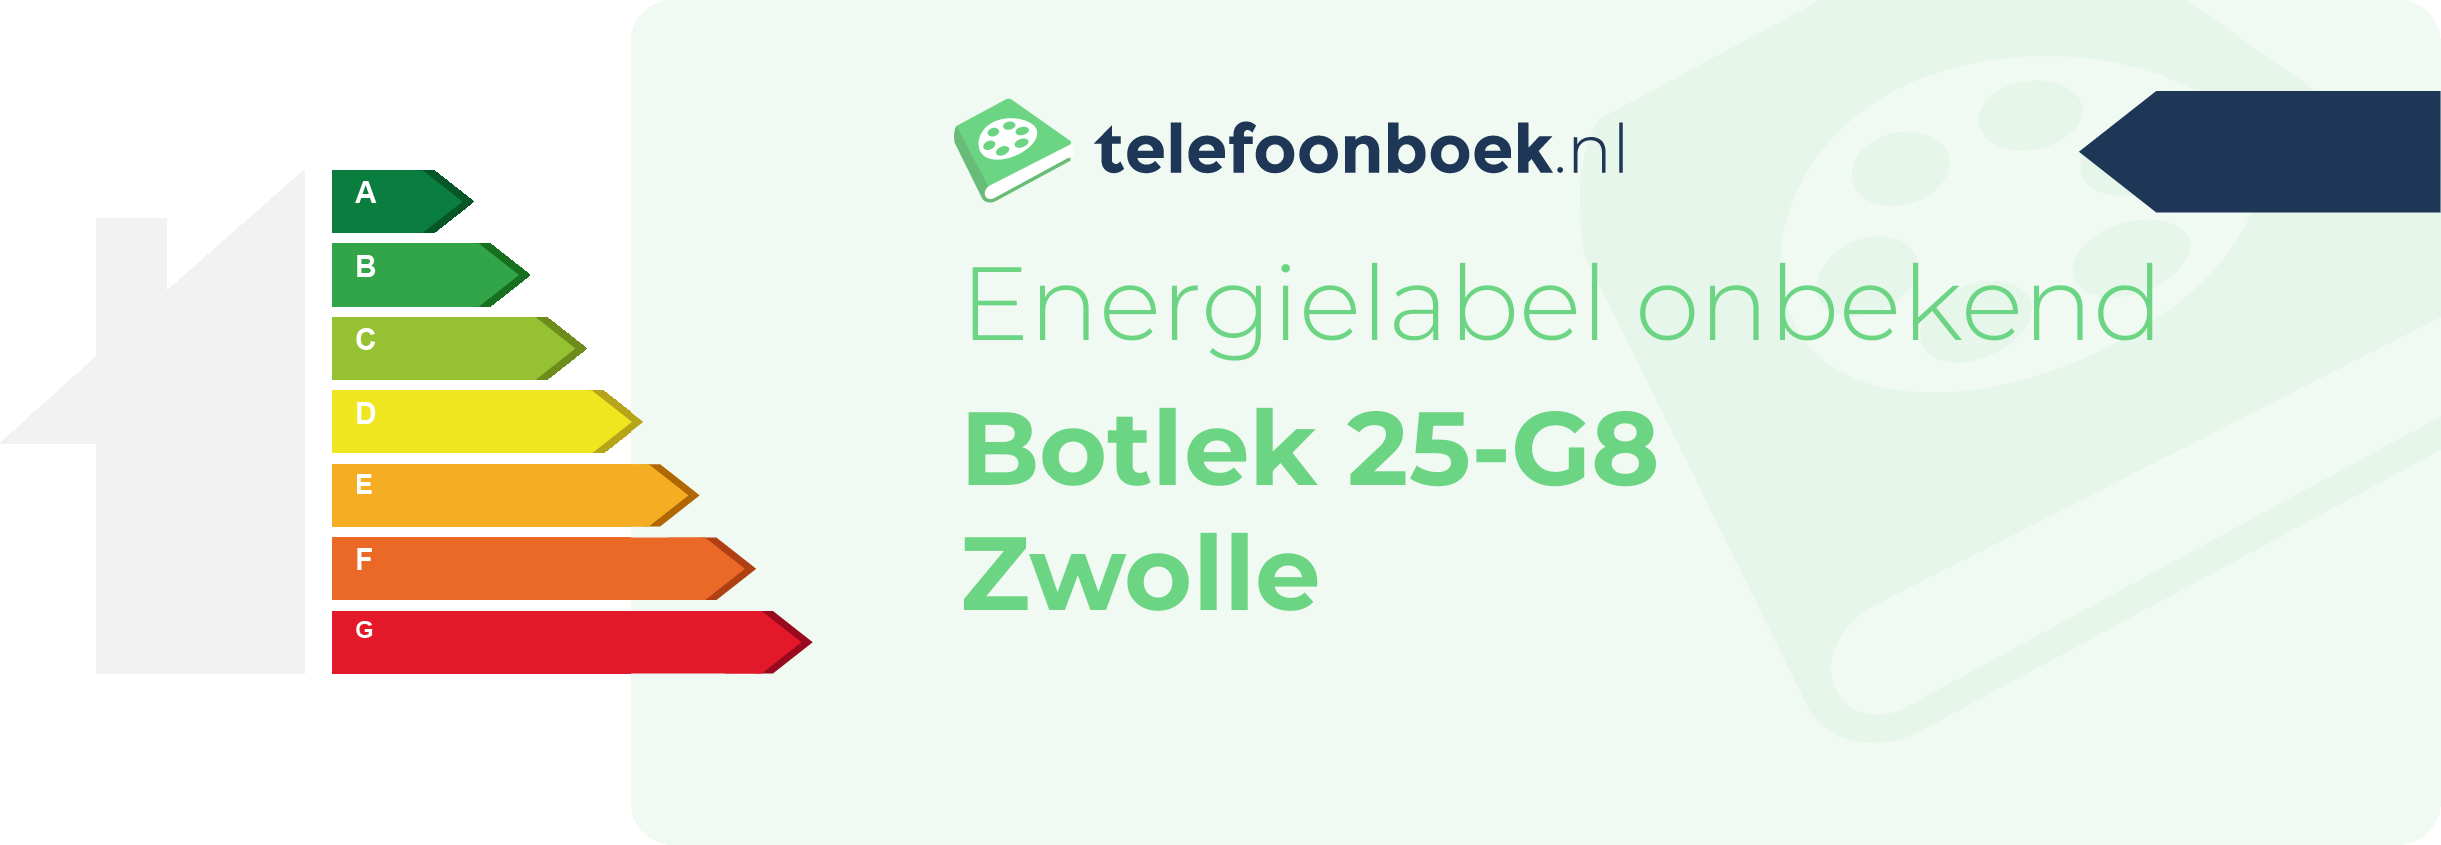 Energielabel Botlek 25-G8 Zwolle